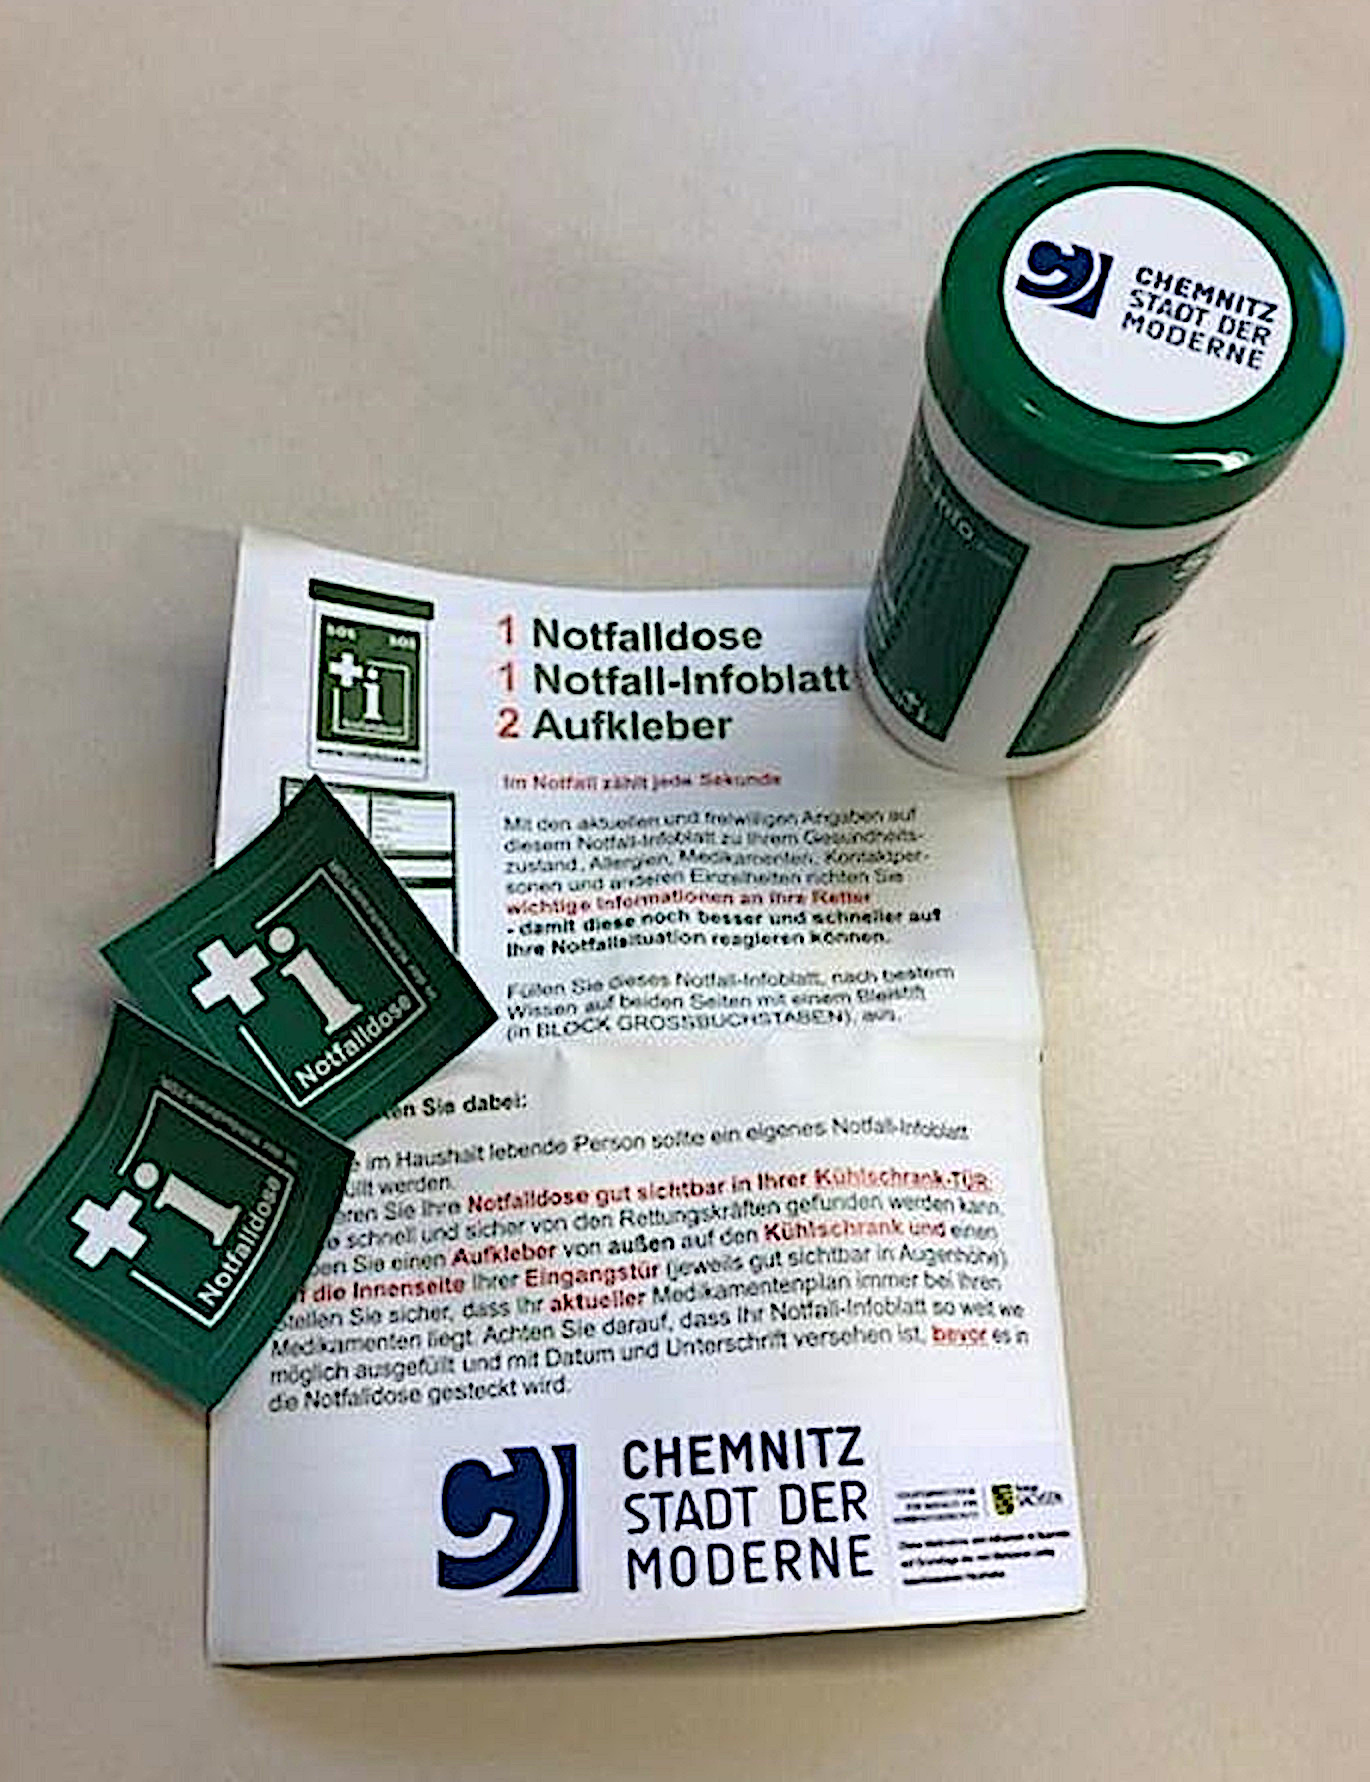 https://www.chemnitz.de/chemnitz/media/aktuell/pressemitteilungen/2020/pd0693_foto_chem_dose1.jpg